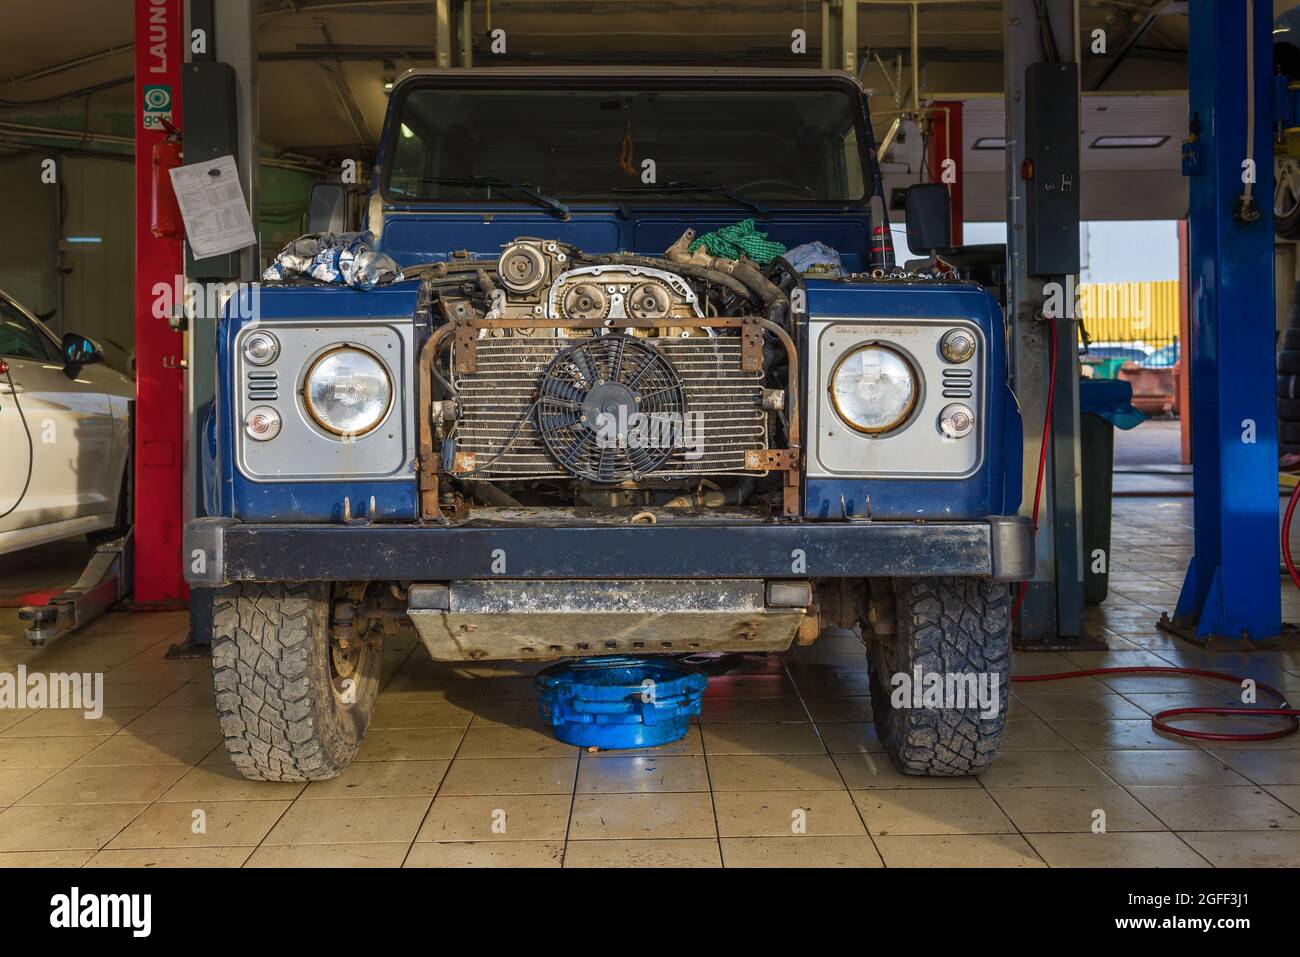 SANKT PETERSBURG, RUSSLAND - 10. AUGUST 2021: Alter Land Rover Defender auf einem Autoservice Stockfoto